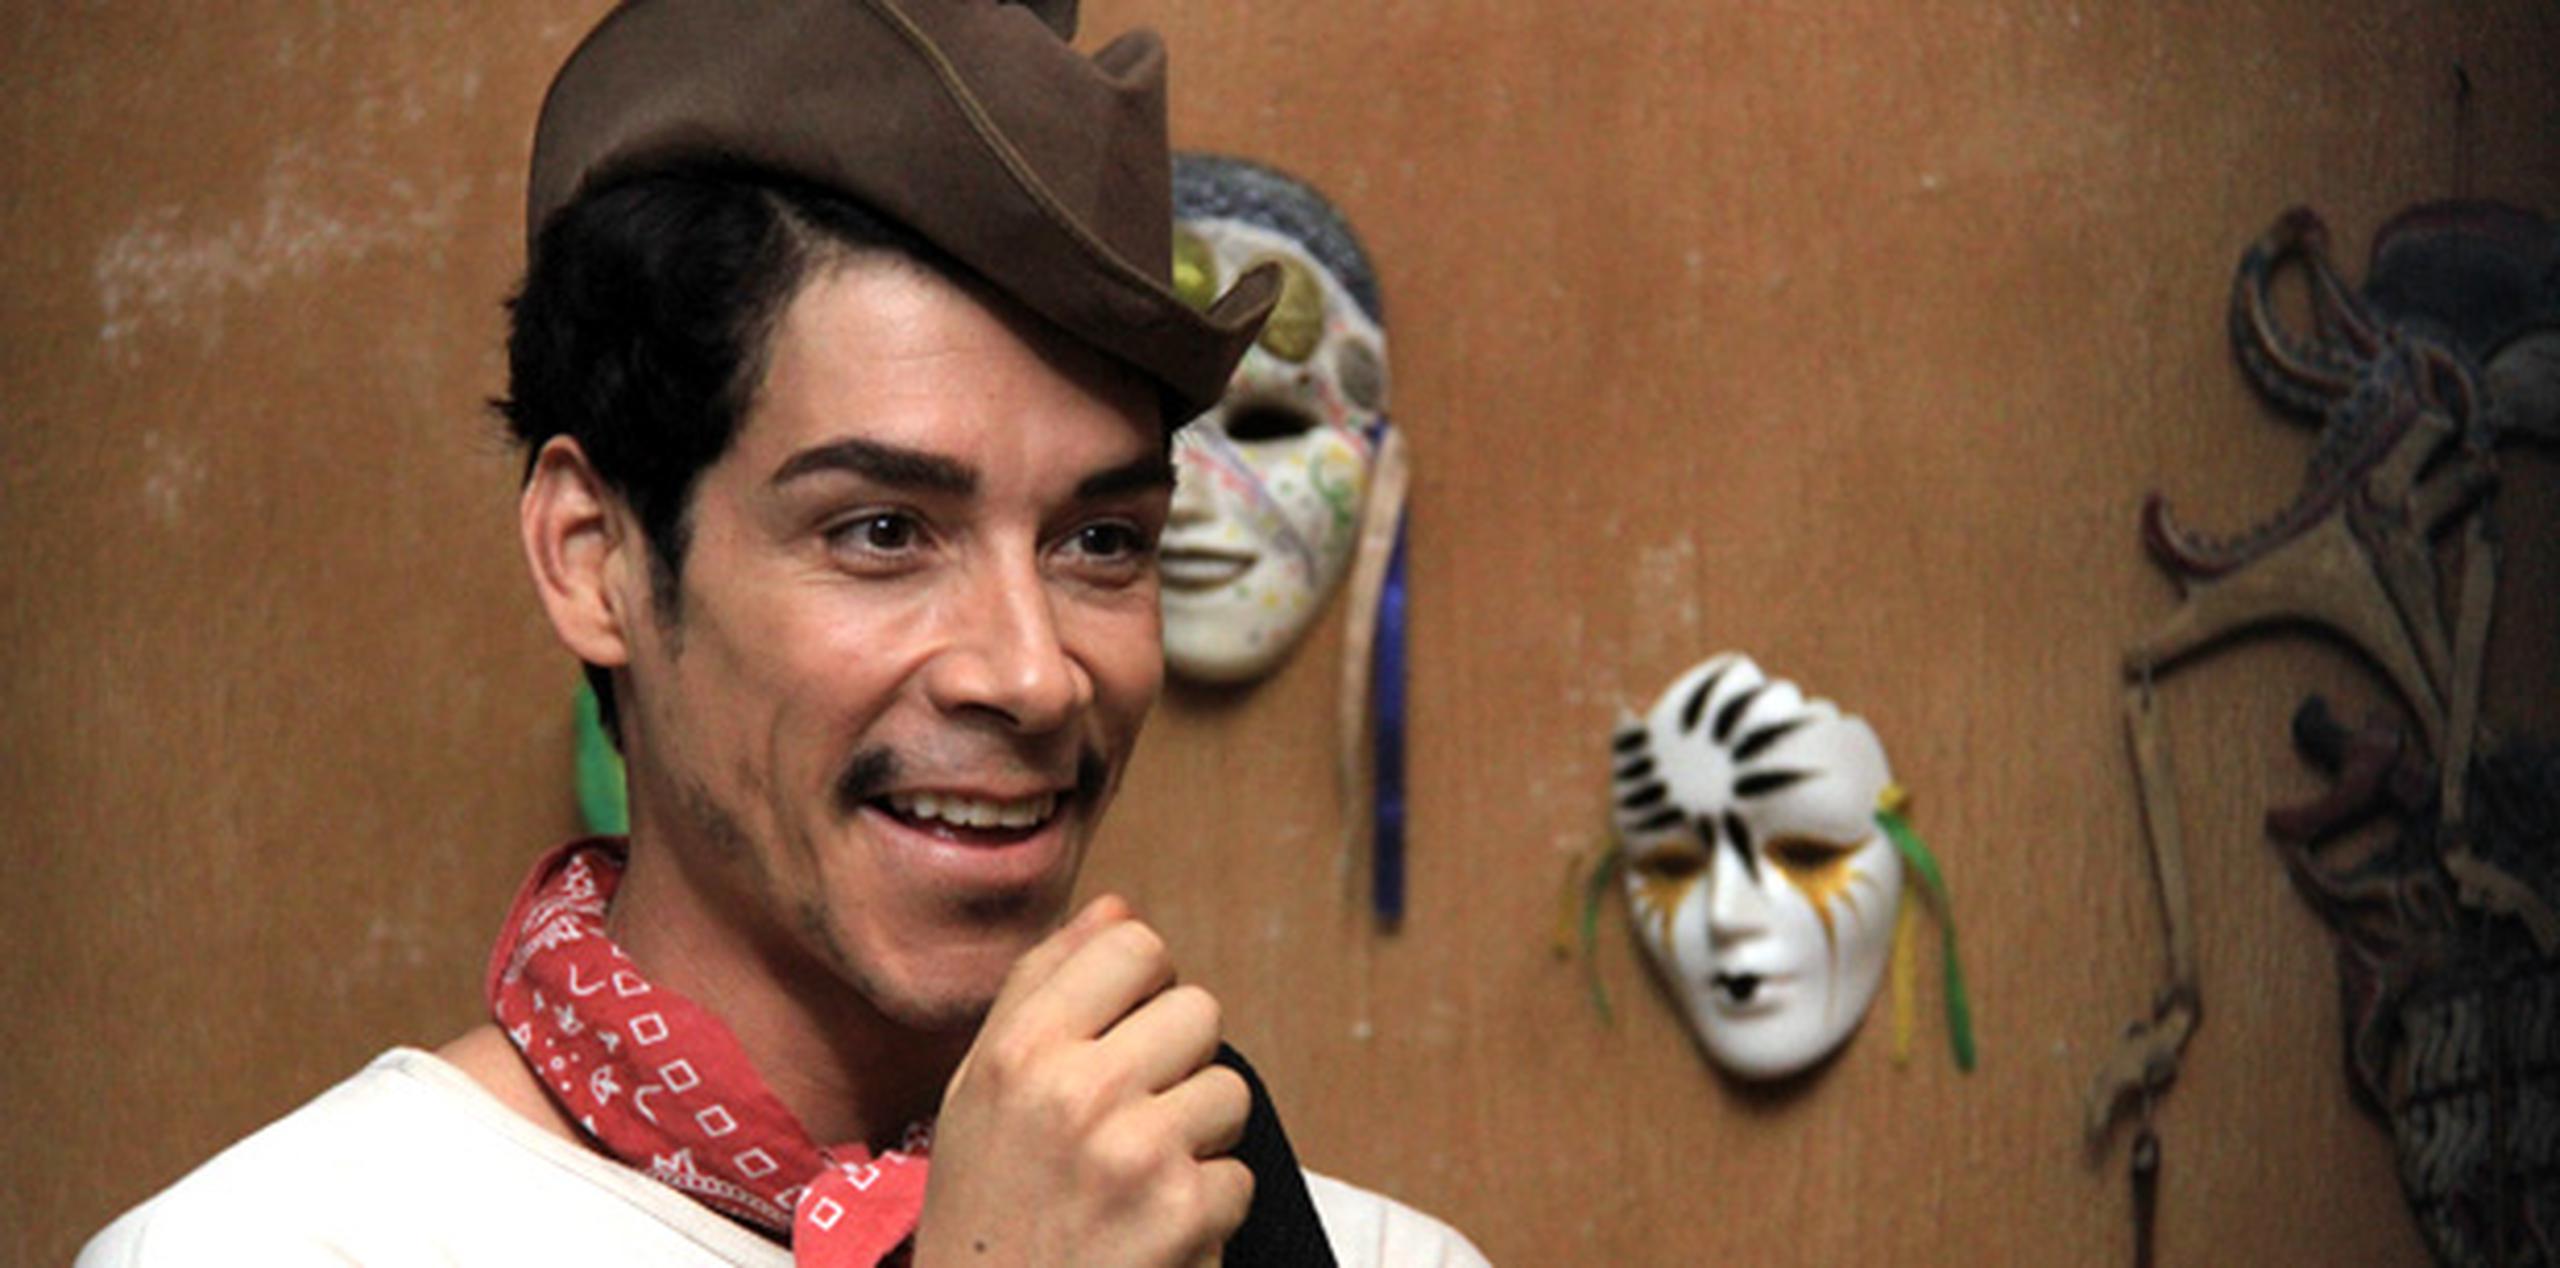 El español Óscar Jaenada interpreta al comediante mexicano Mario Moreno en el filme "Cantinflas".